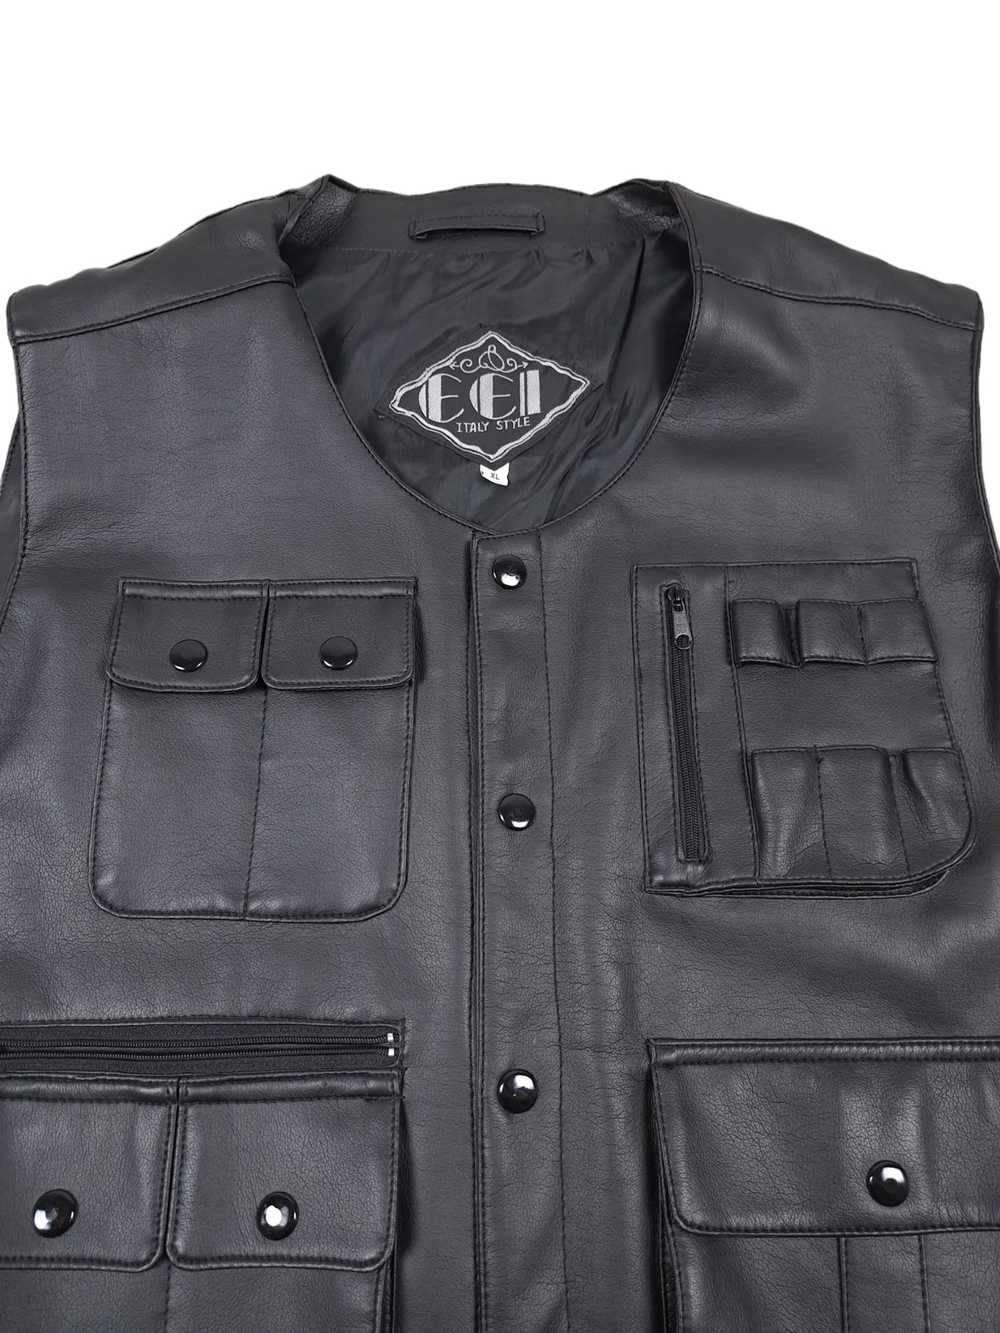 Designer × Leather × Leather Jacket Vintage Waxed… - image 2